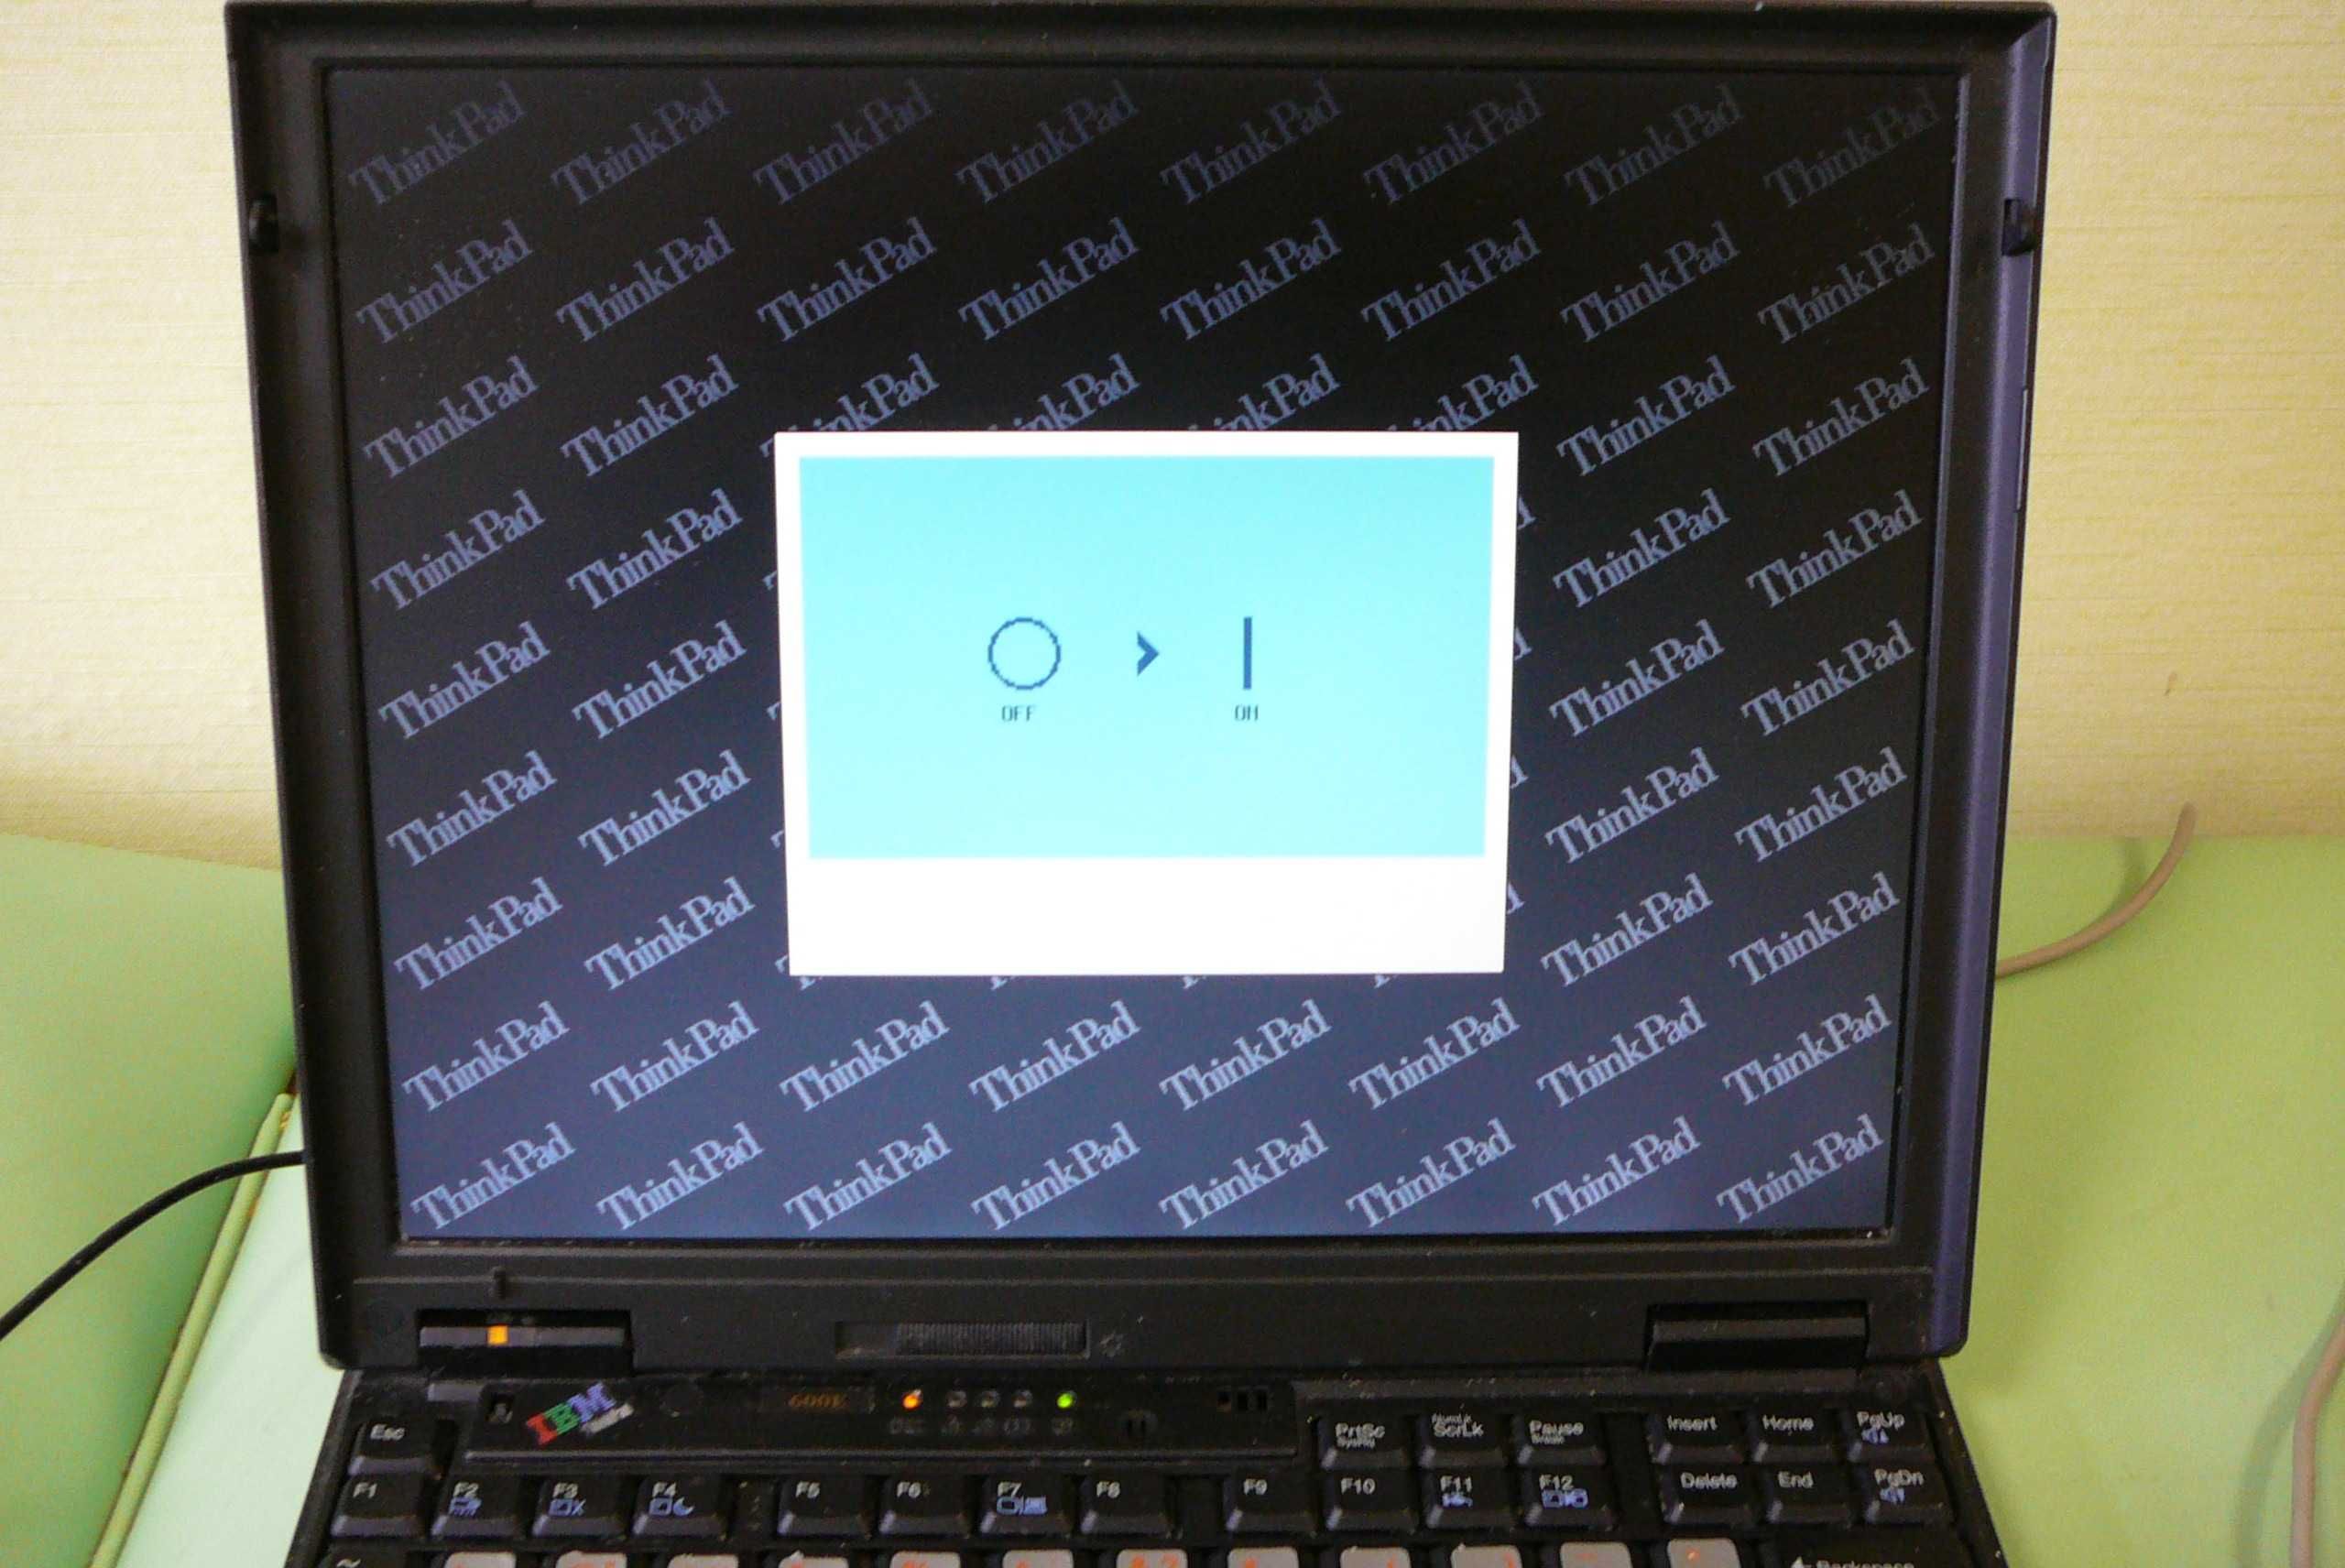 Раритетный ноутбук IBM ThinkPad Type 2645, рабочее состояние с 1998 г